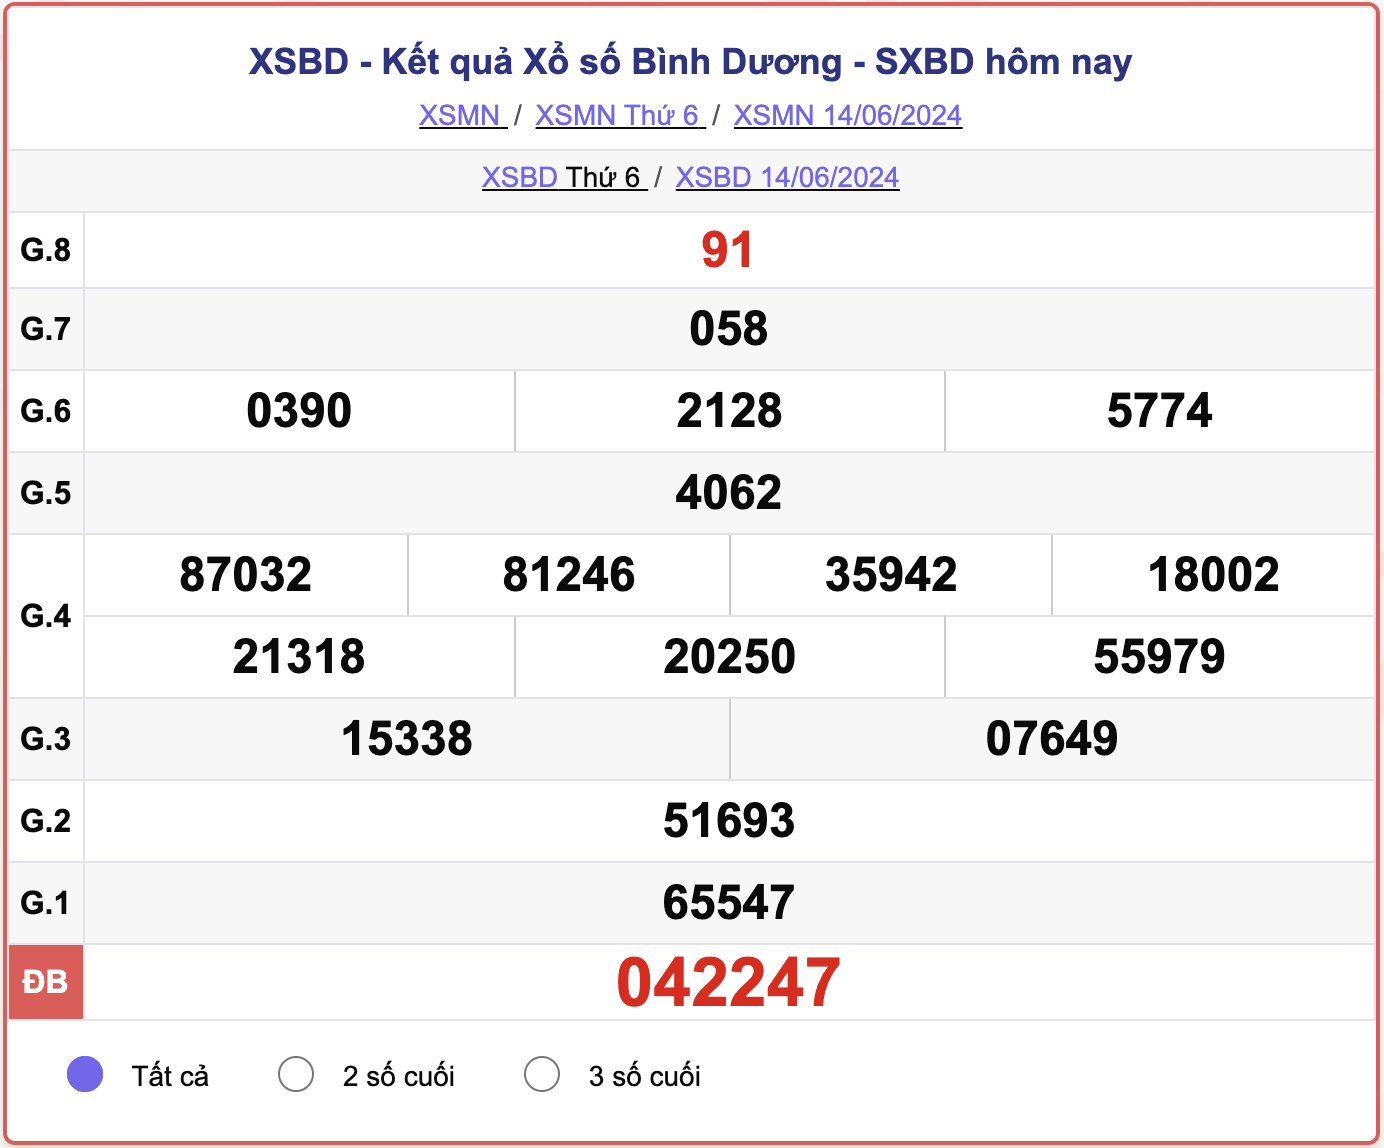 XSBD 14/6, kết quả xổ số Bình Dương hôm nay 14/6/2024.